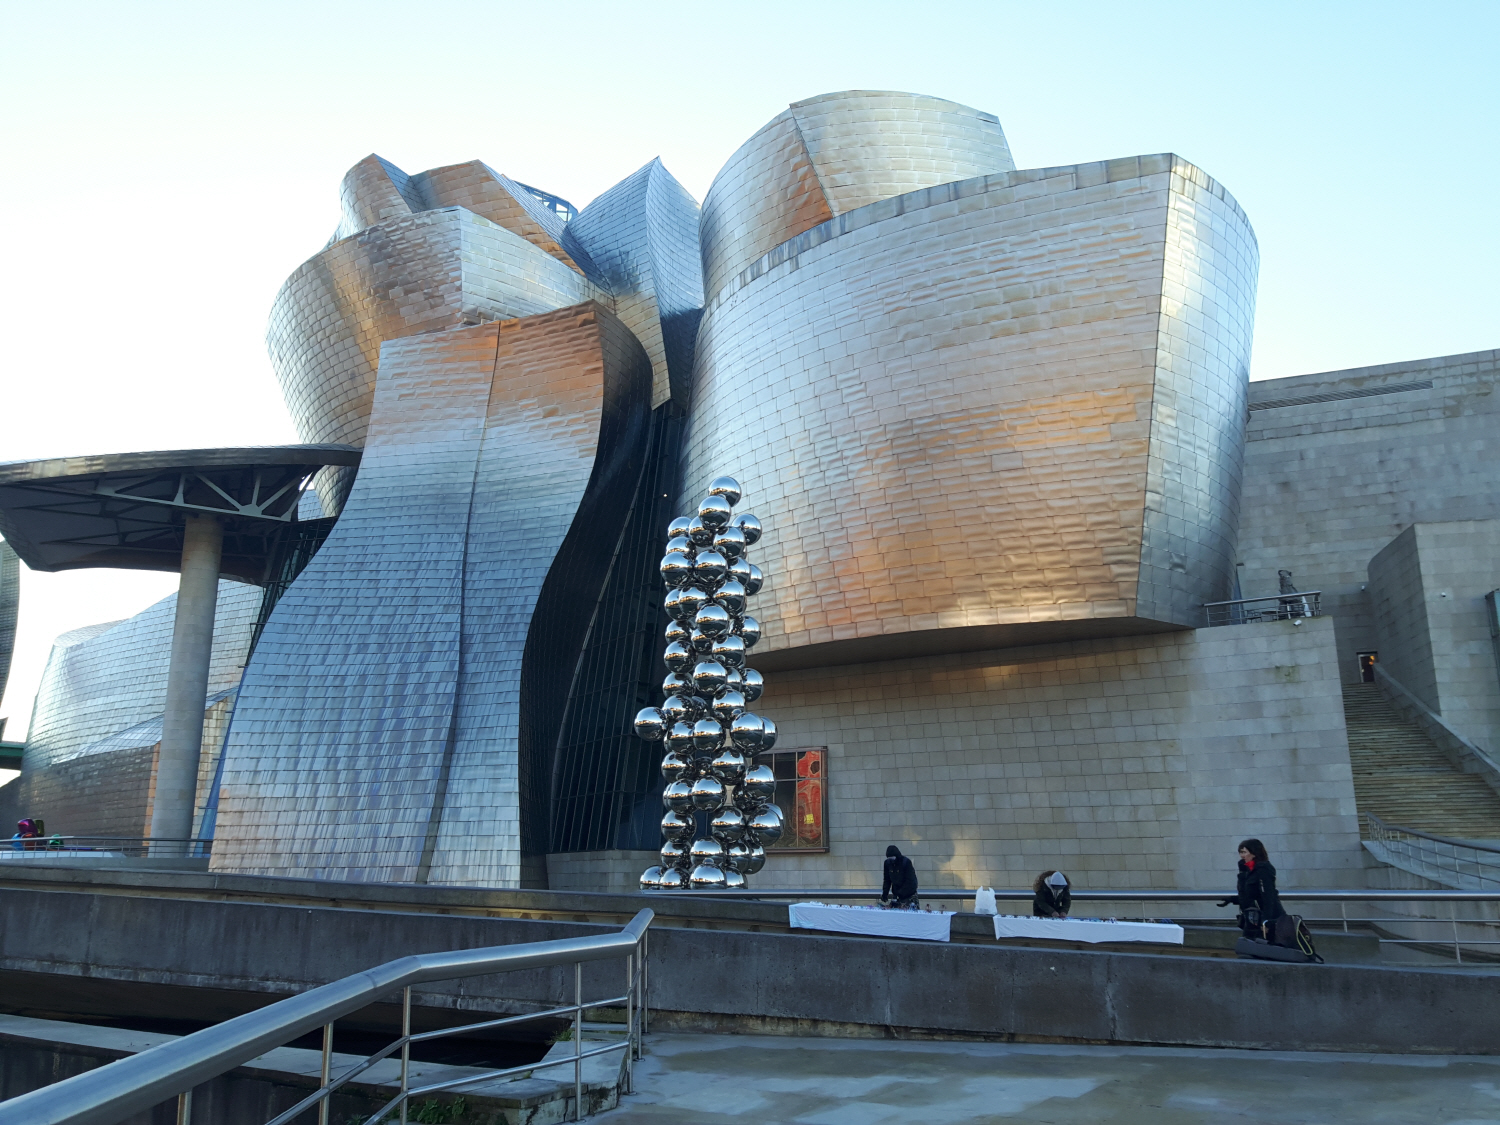 유명 건축가 프랭크 게리가 설계한 구겐하임미술관 외관을 장식한 수만장의 티타늄이 피레네 산맥을 넘어온 빌바오의 아침 햇살을 반기며 아름다운 장관을 연출하고 있다. 곽성일 기자